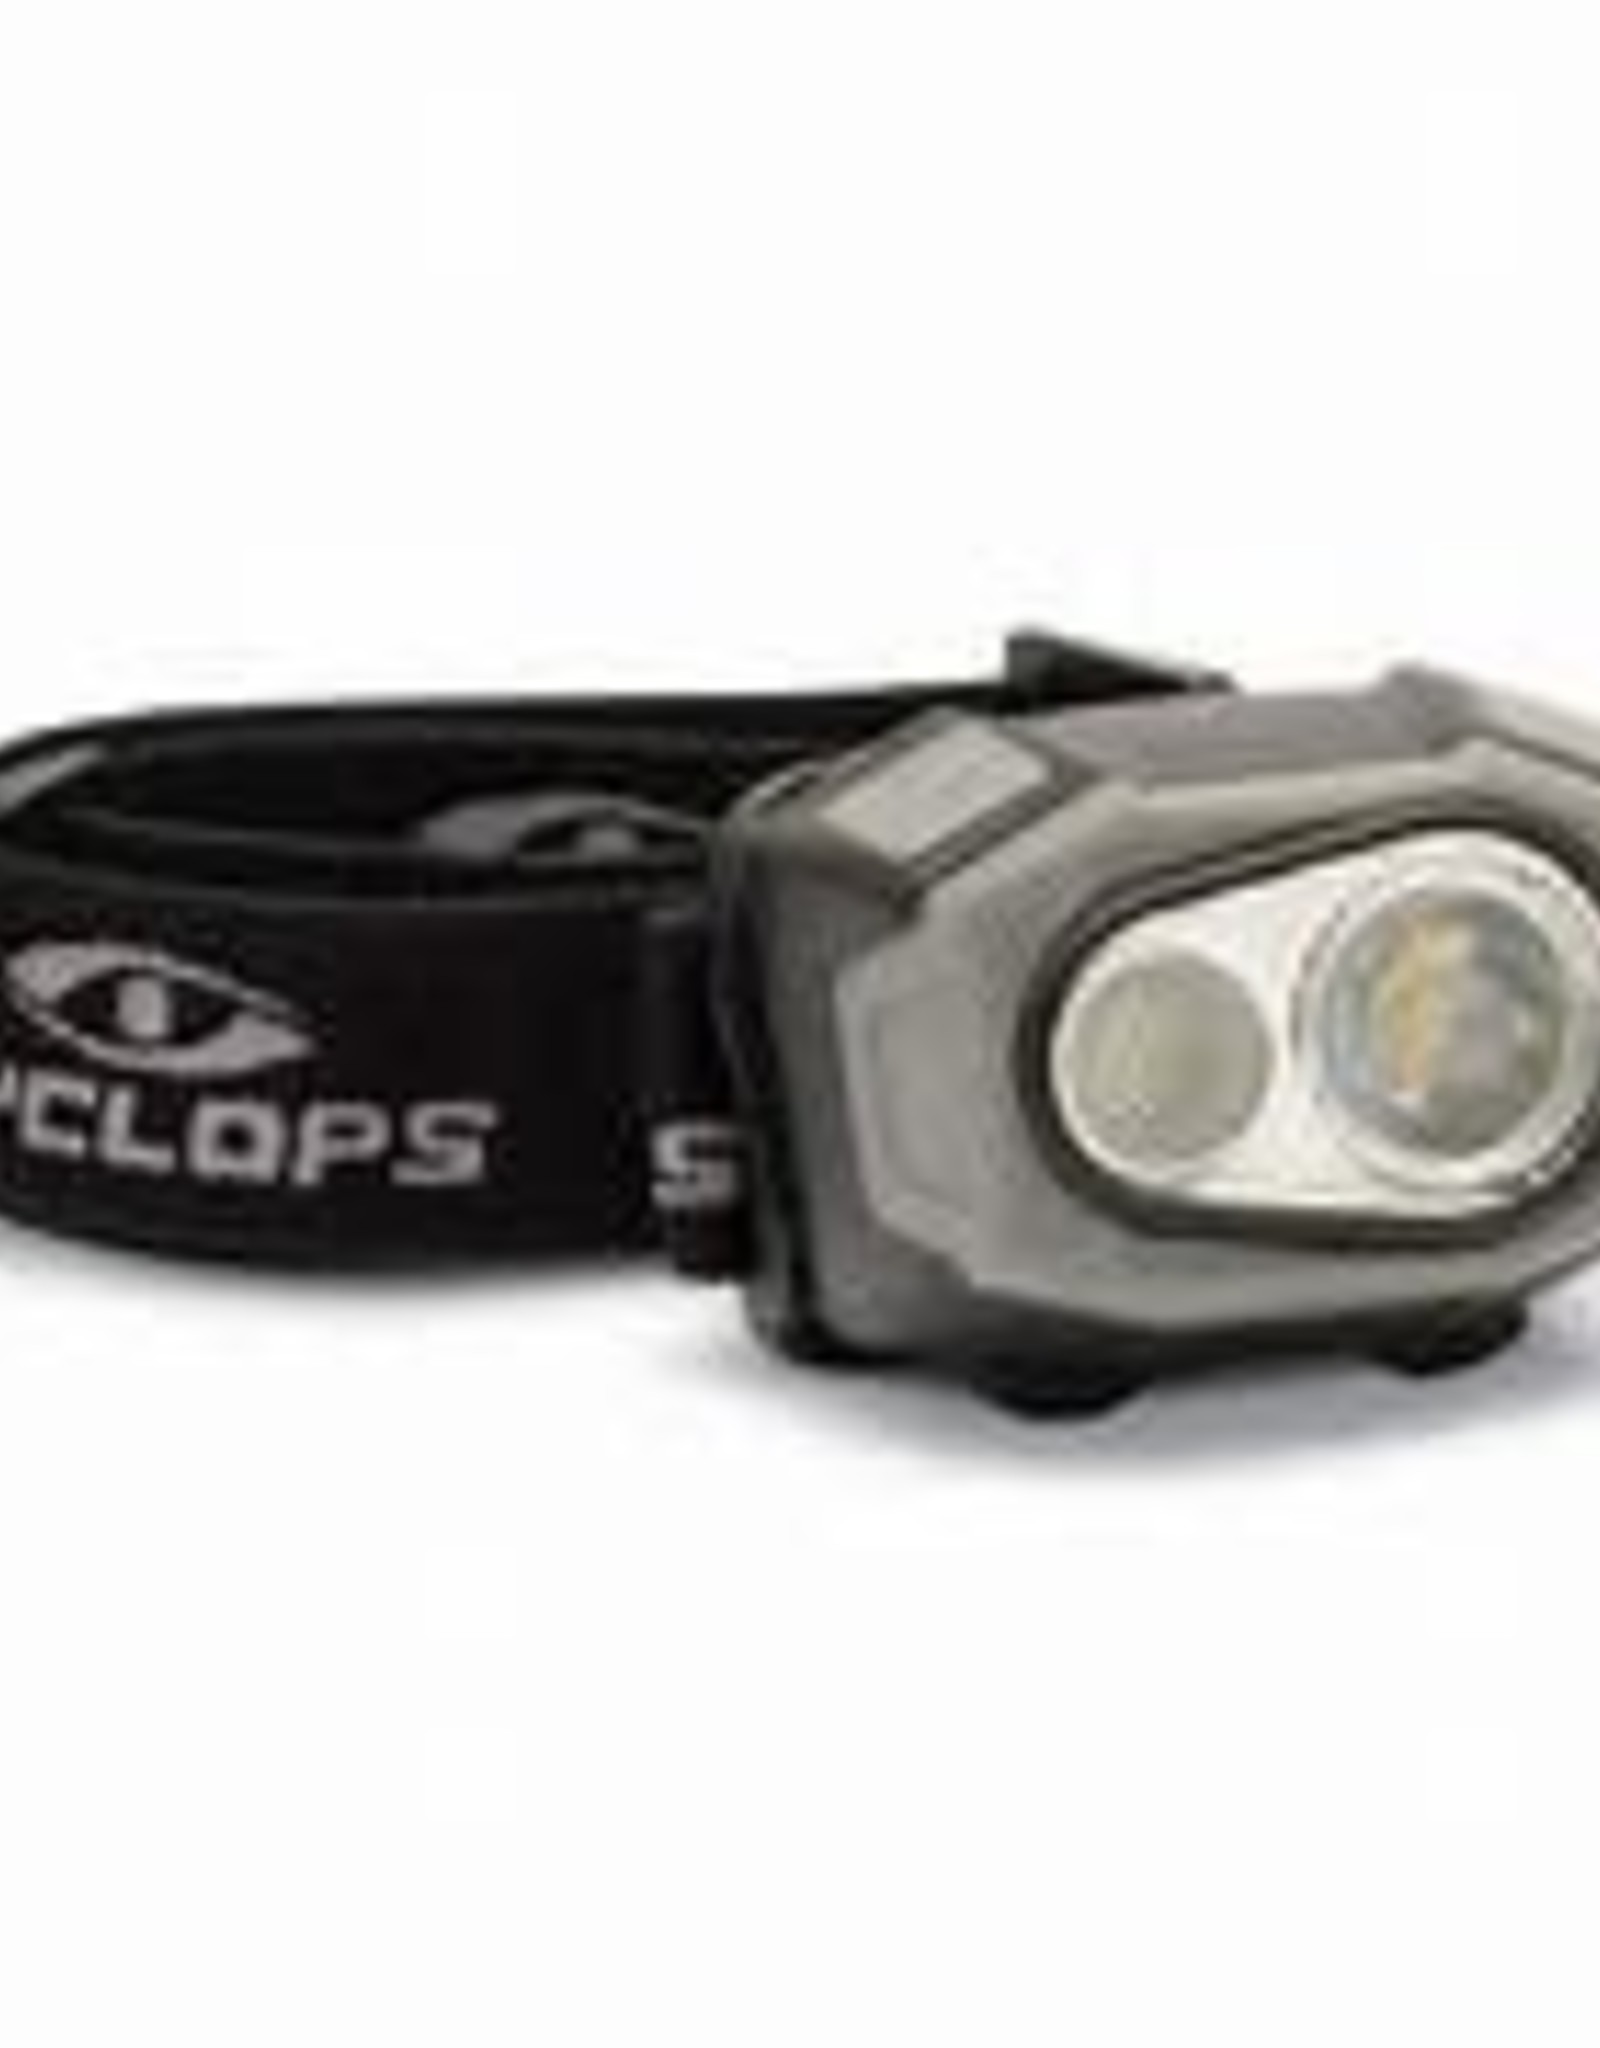 Cyclops eFlex 400 Rechargeable Headlamp